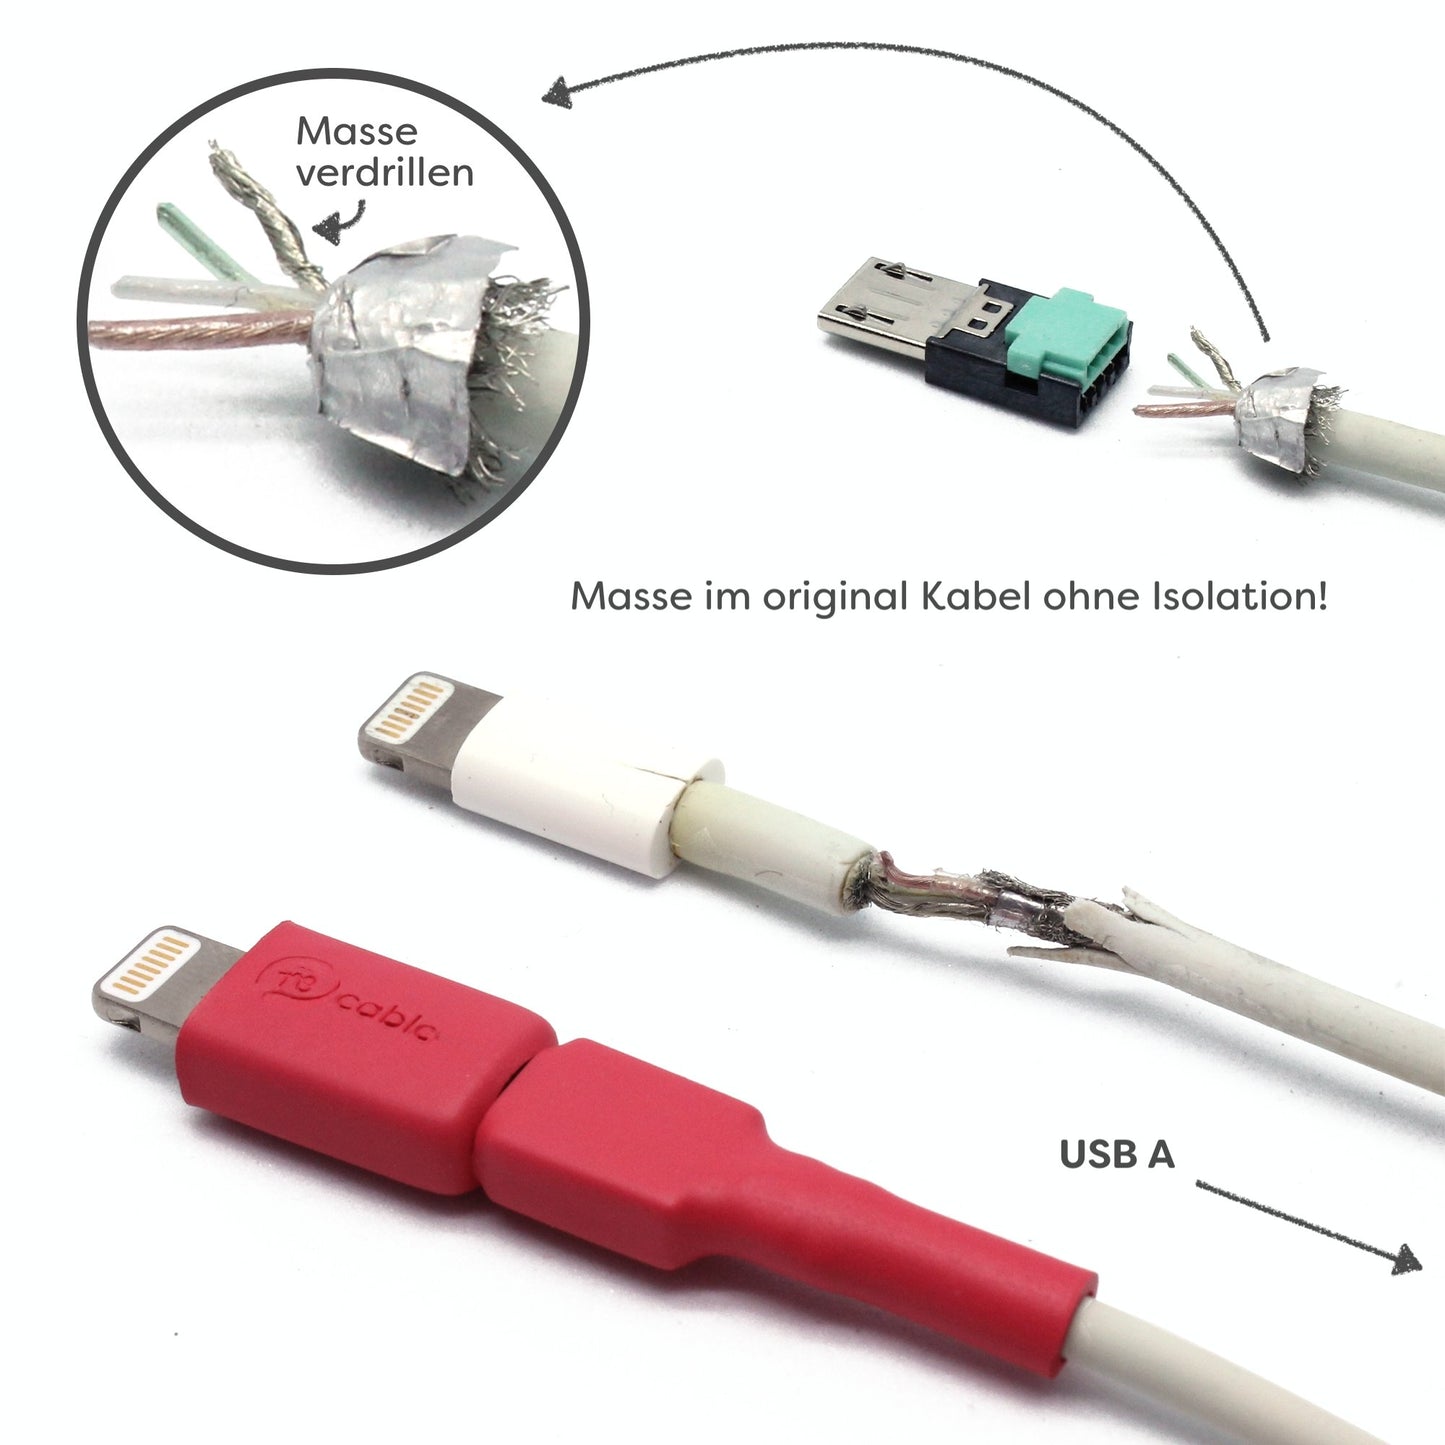 Reparatur Lightning (iPhone) Kabel, zu sehen ist ein kaputtes iPhone Kabel, der Schritt, wie das Kabel mit dem Stecker wieder verbunden wird und das reparierte Lightning Kabel